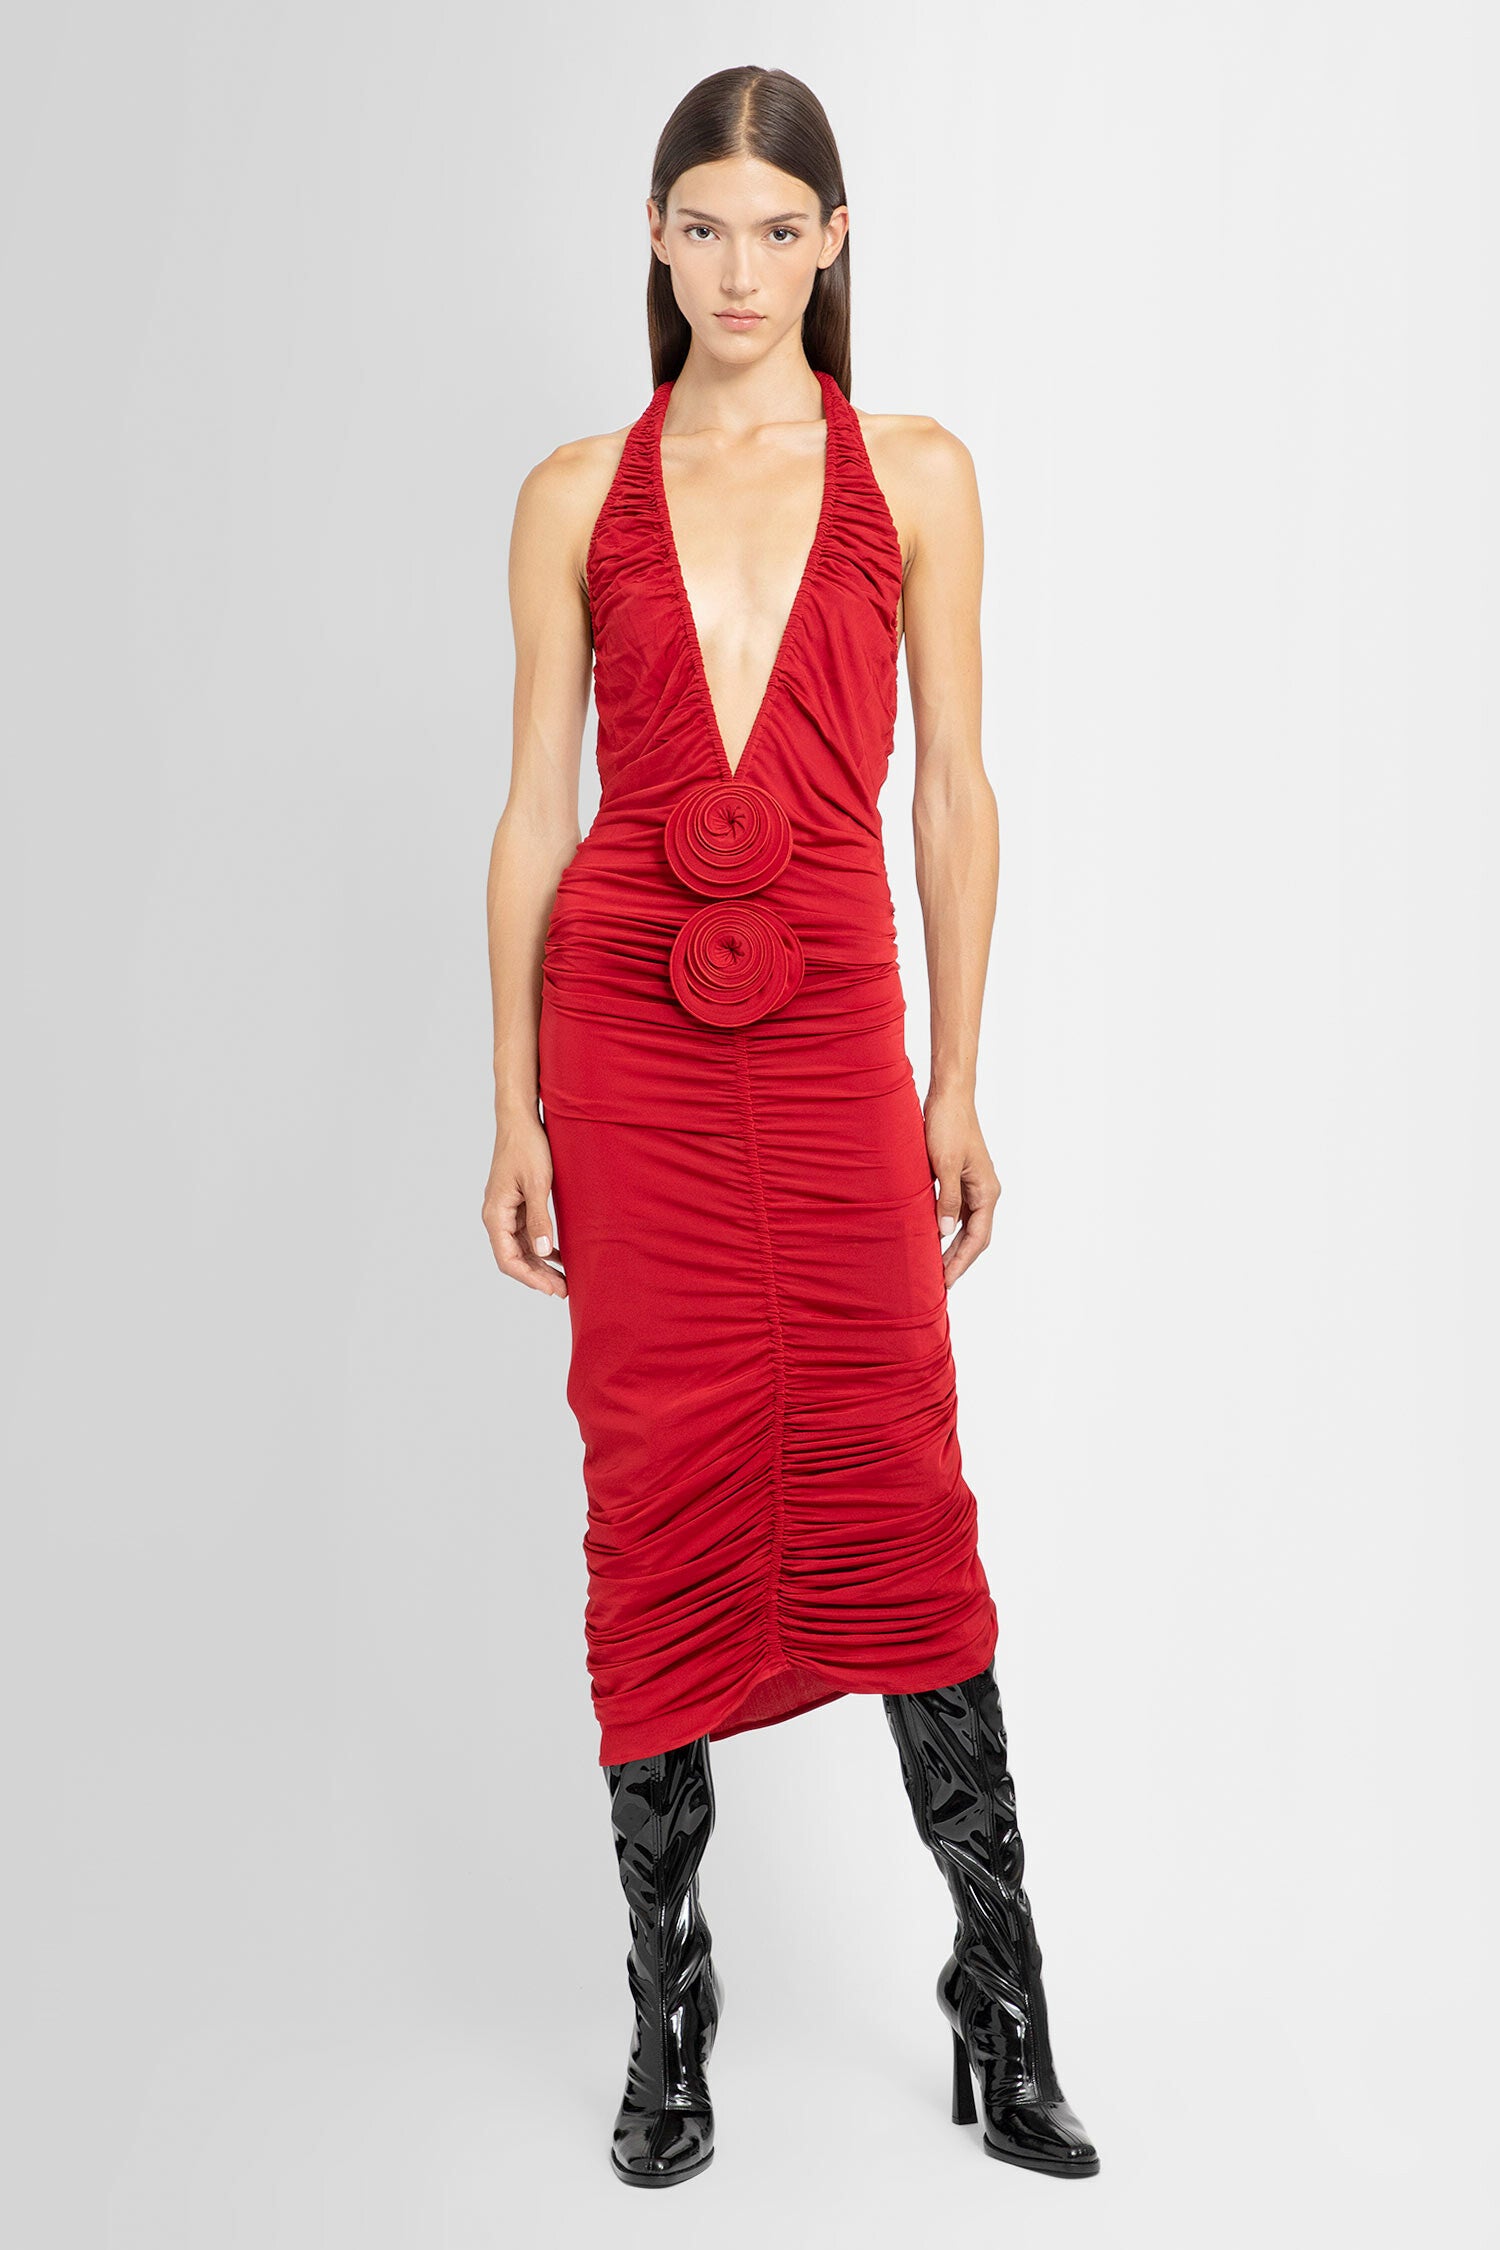 MAGDA BUTRYM WOMAN RED DRESSES - MAGDA BUTRYM - DRESSES | Antonioli